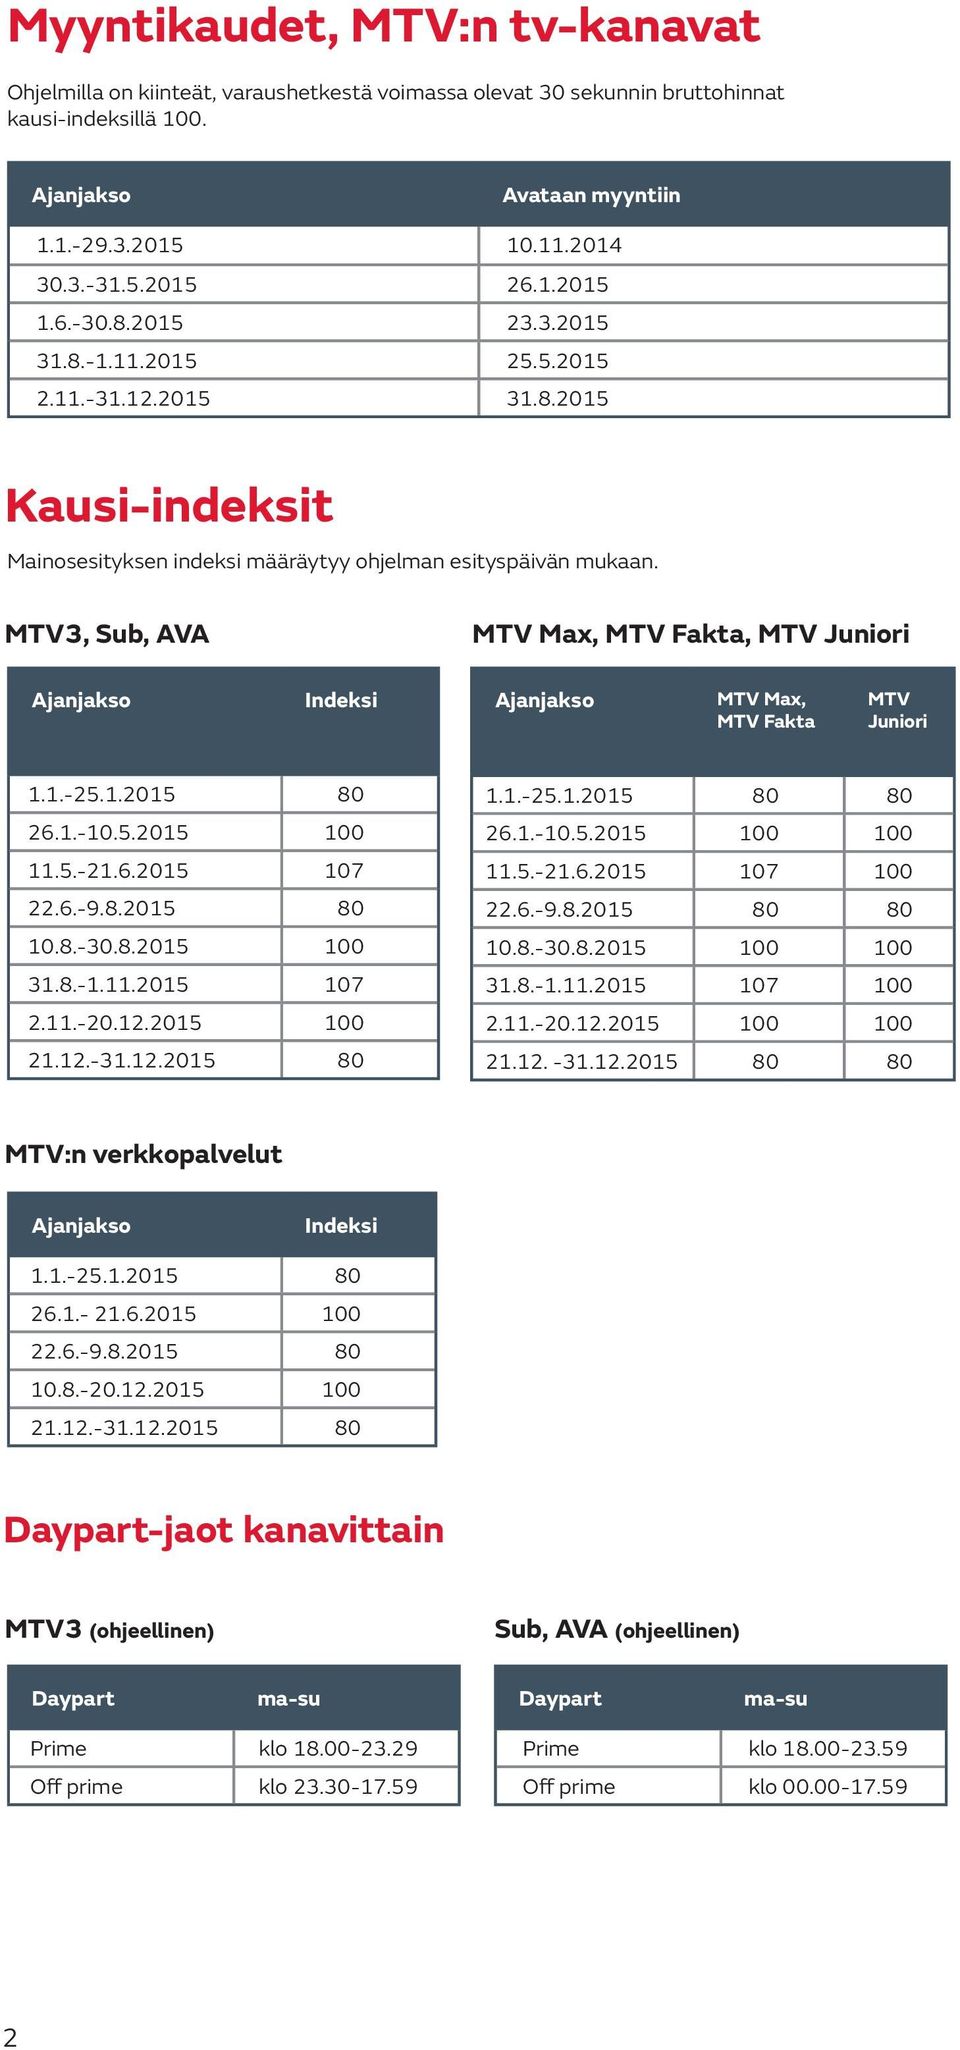 MTV3, Sub, AVA MTV Max, MTV Fakta, MTV Juniori Ajanjakso Indeksi Ajanjakso MTV Max, MTV Fakta MTV Juniori 1.1.-25.1.2015 80 26.1.-10.5.2015 100 11.5.-21.6.2015 107 22.6.-9.8.2015 80 10.8.-30.8.2015 100 31.